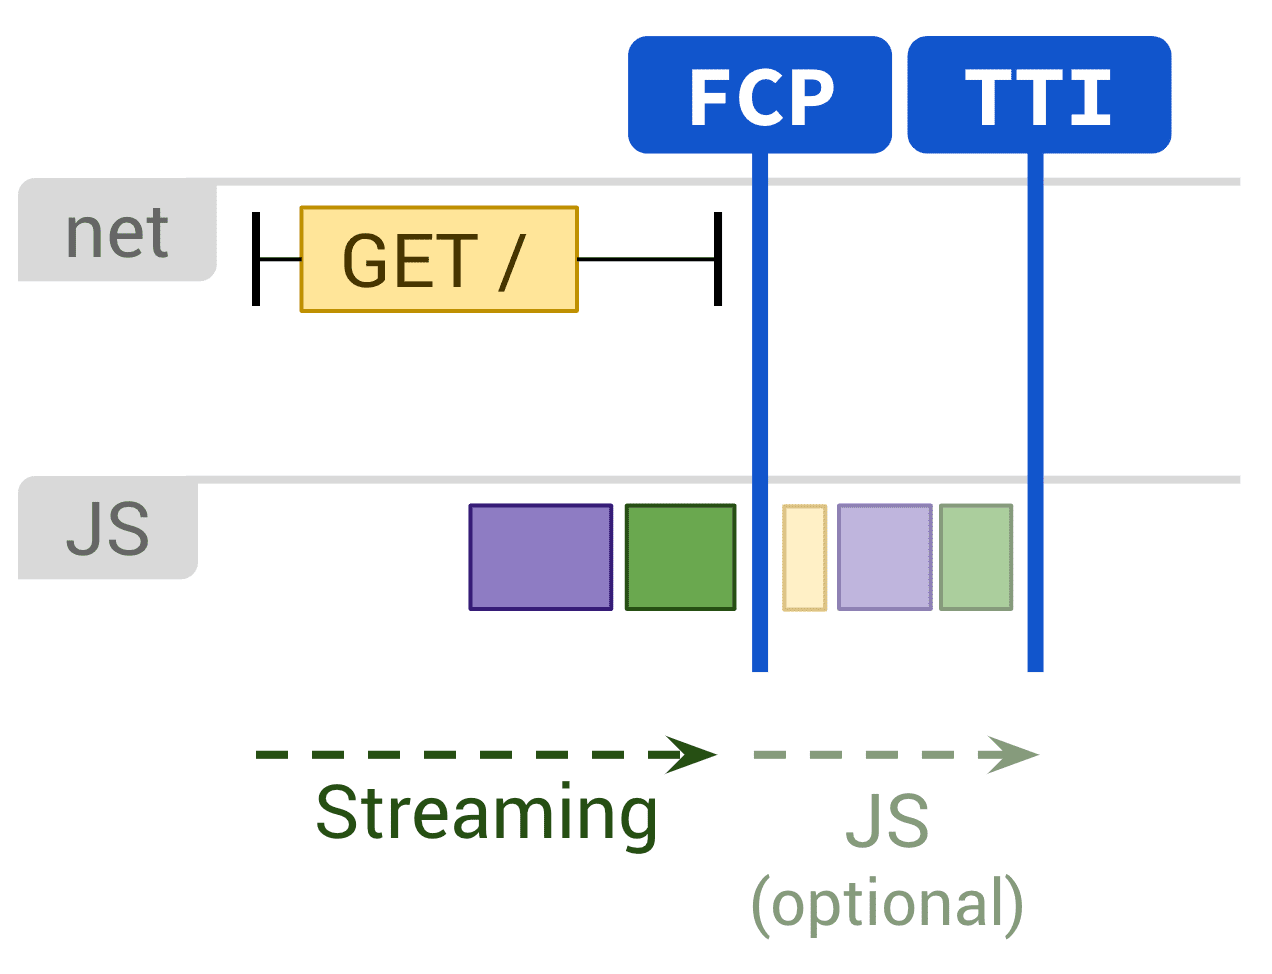 نمودار نشان دهنده رندر استاتیک و اجرای اختیاری JS که بر FCP و TTI تأثیر می گذارد.